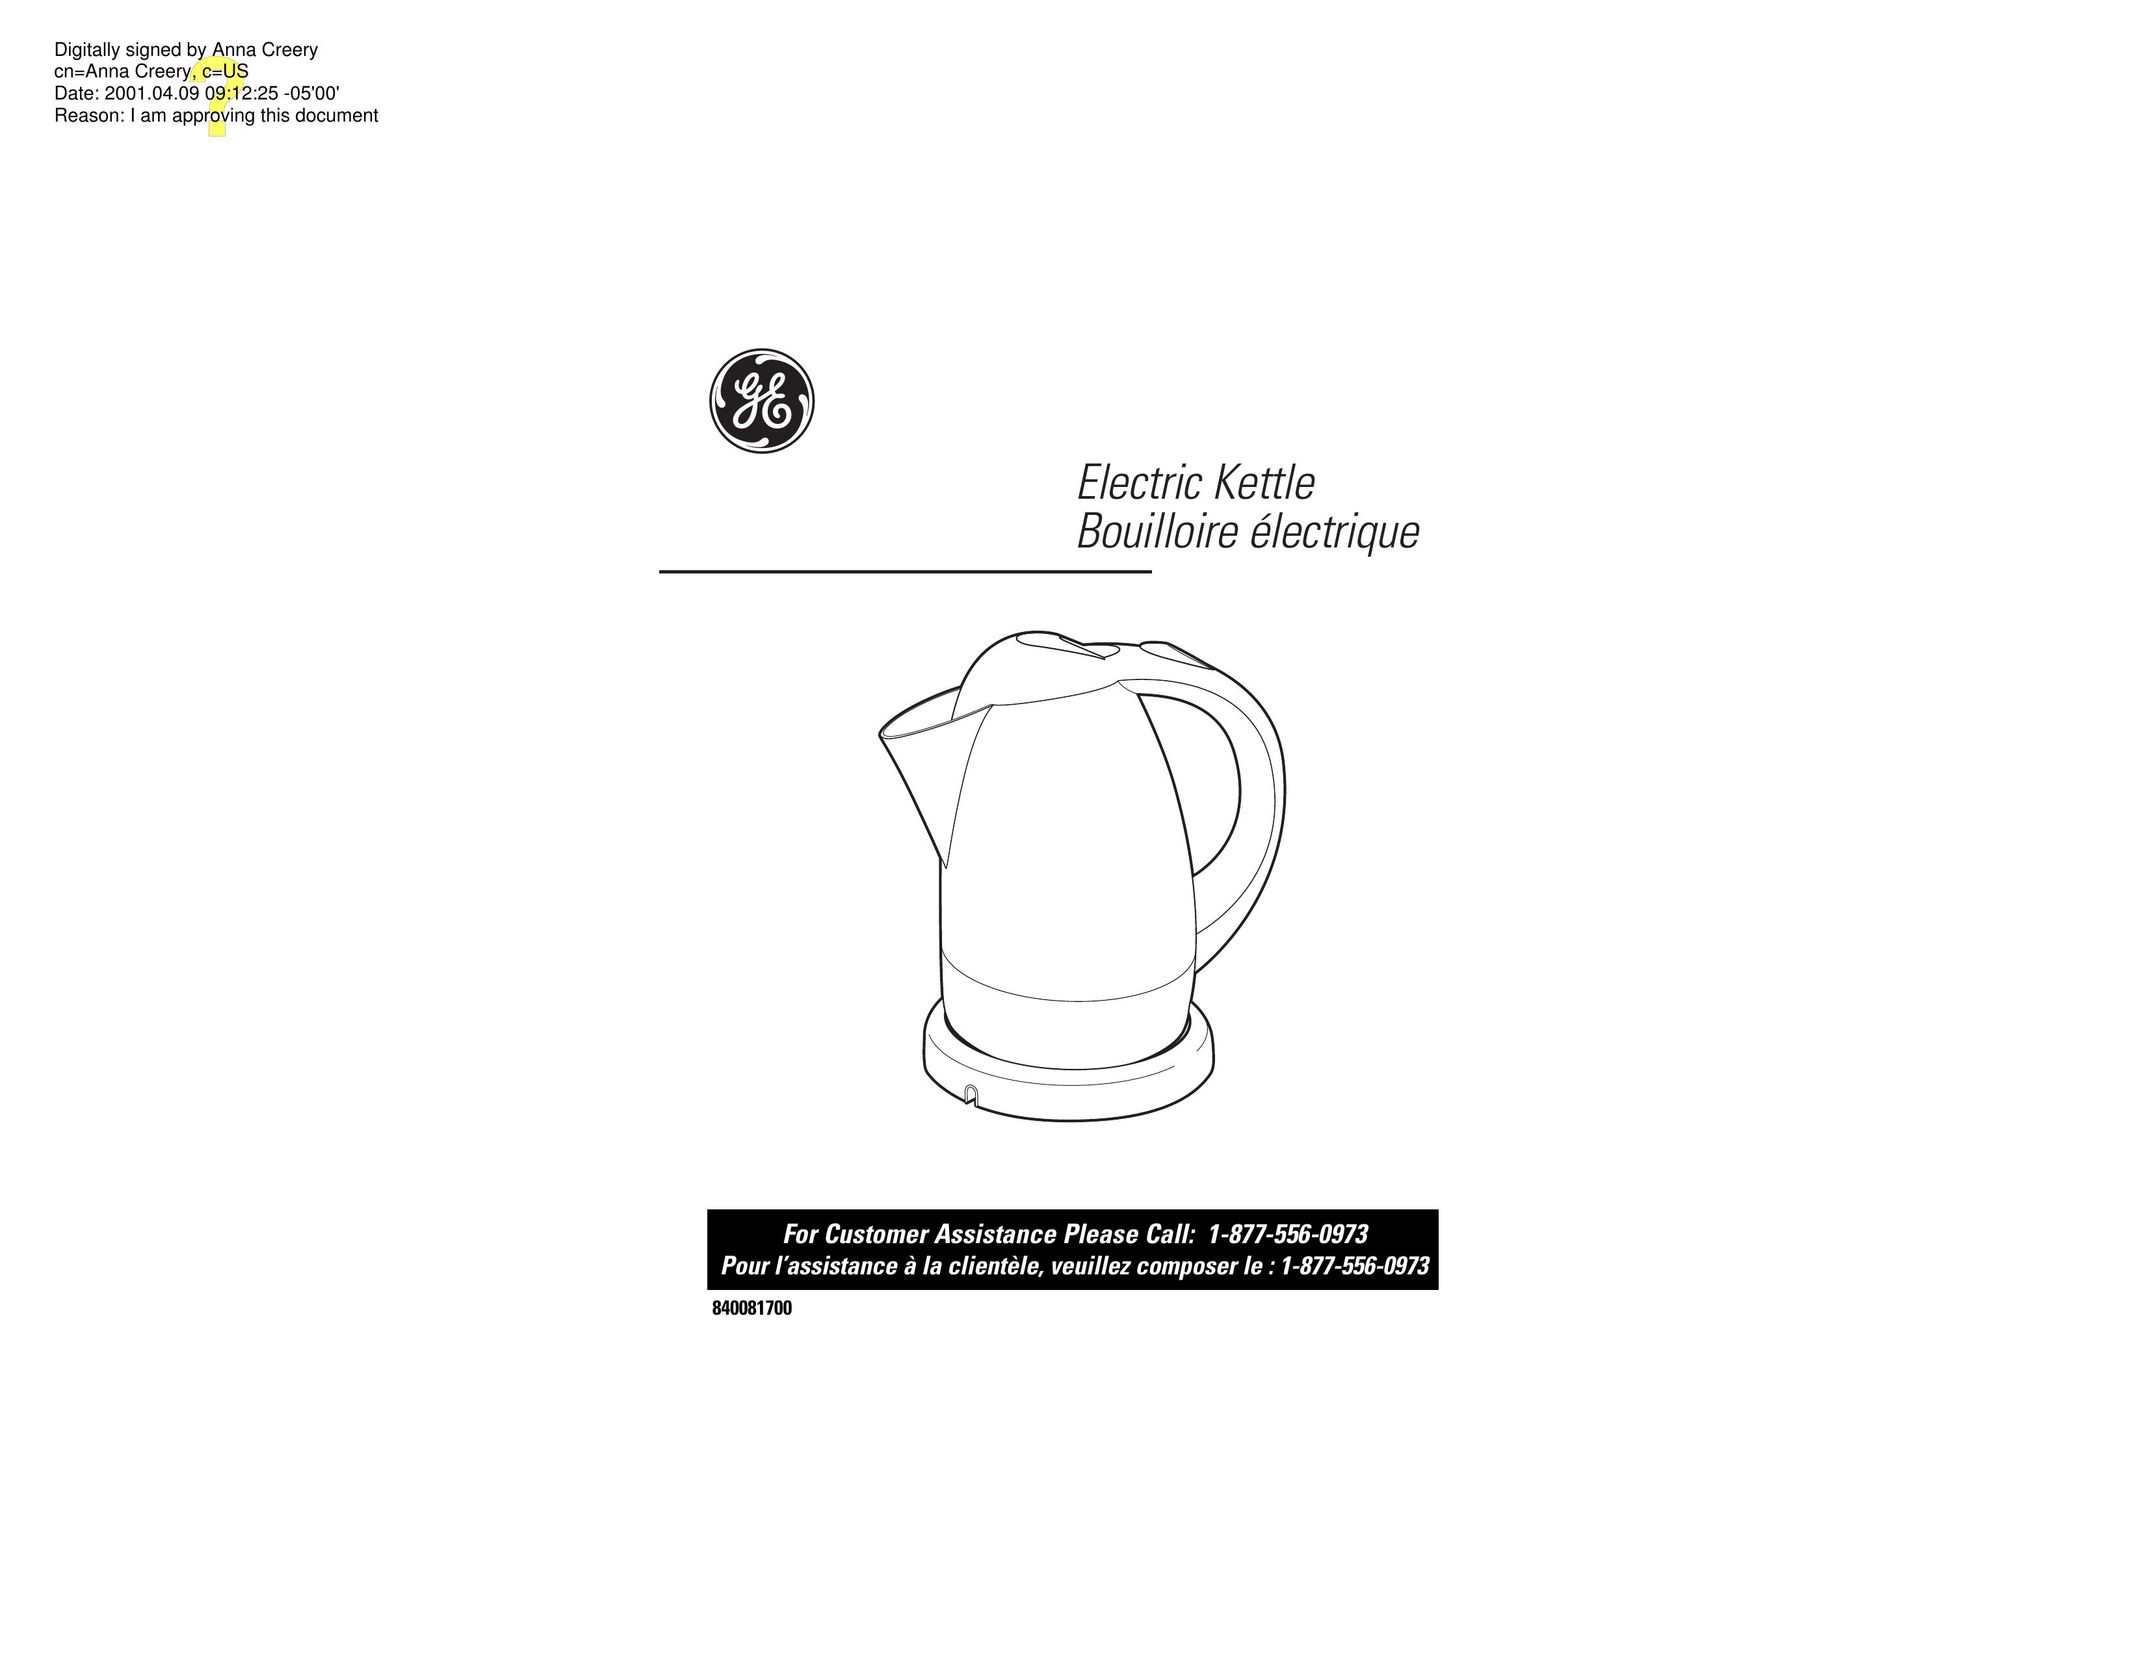 GE 106764 Hot Beverage Maker User Manual